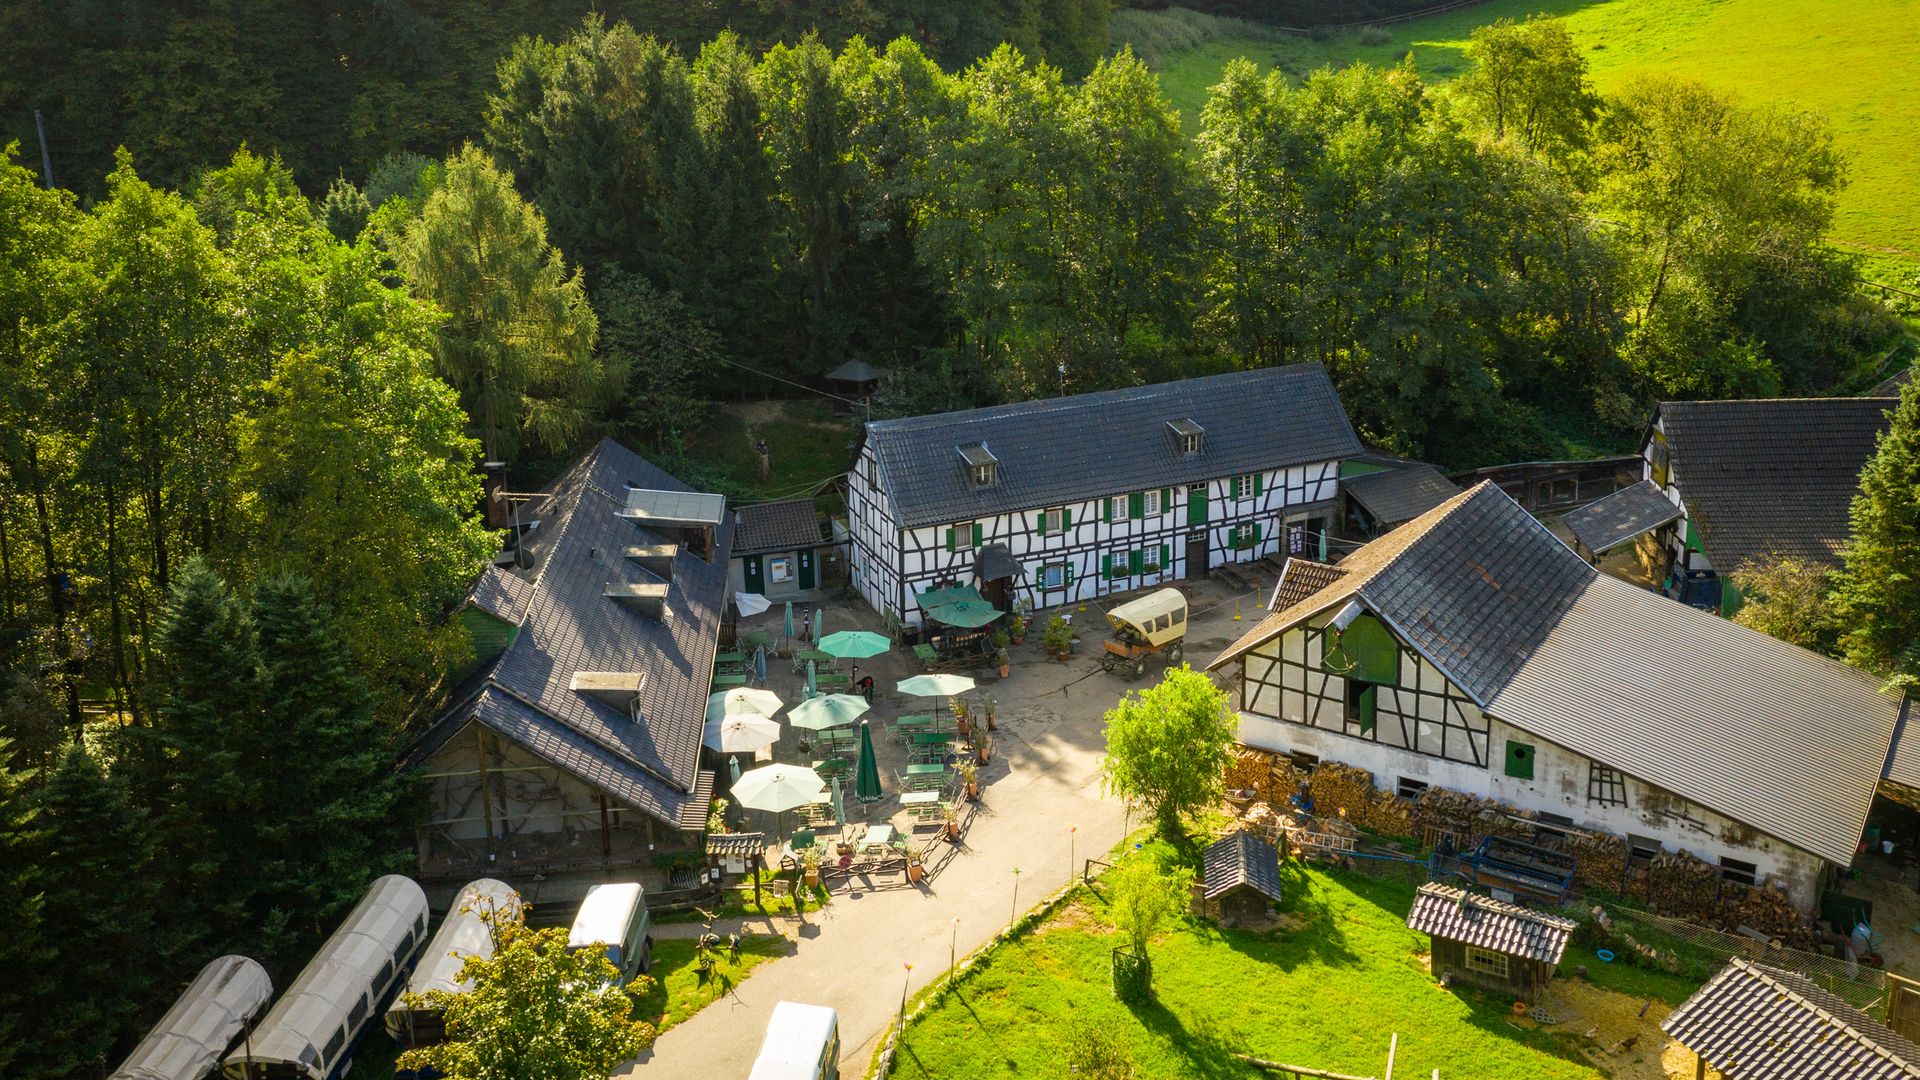 Blick von oben auf einen großen Hof mit Fachwerkhäusern, Planwagen und Restaurantbetrieb, die Gammersbacher Mühle.